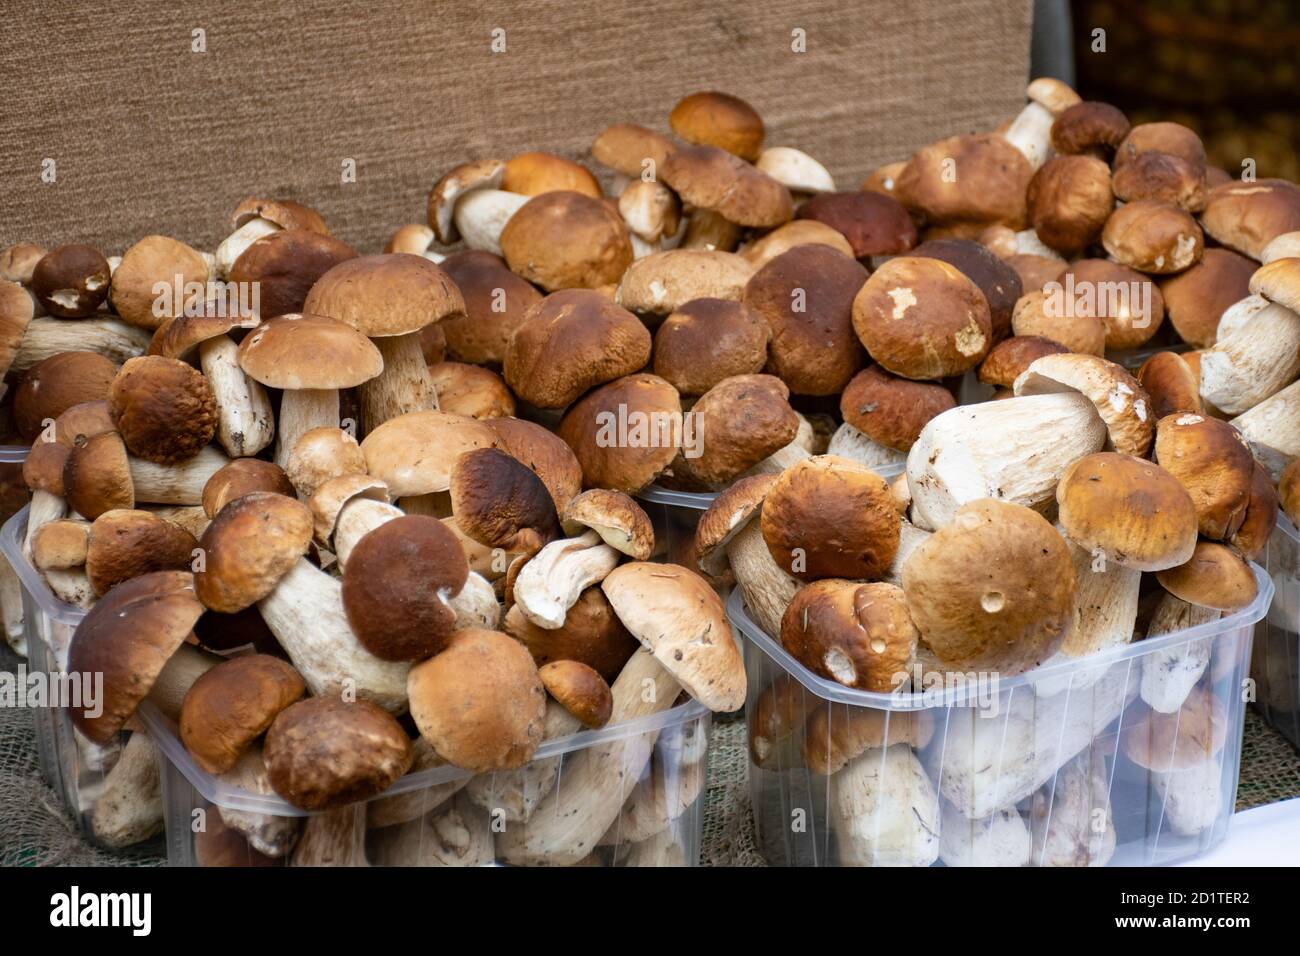 Funghi porcini boletus in vendita in piccoli cestini in un mercato alimentare di strada, vendemmia autunnale Foto Stock